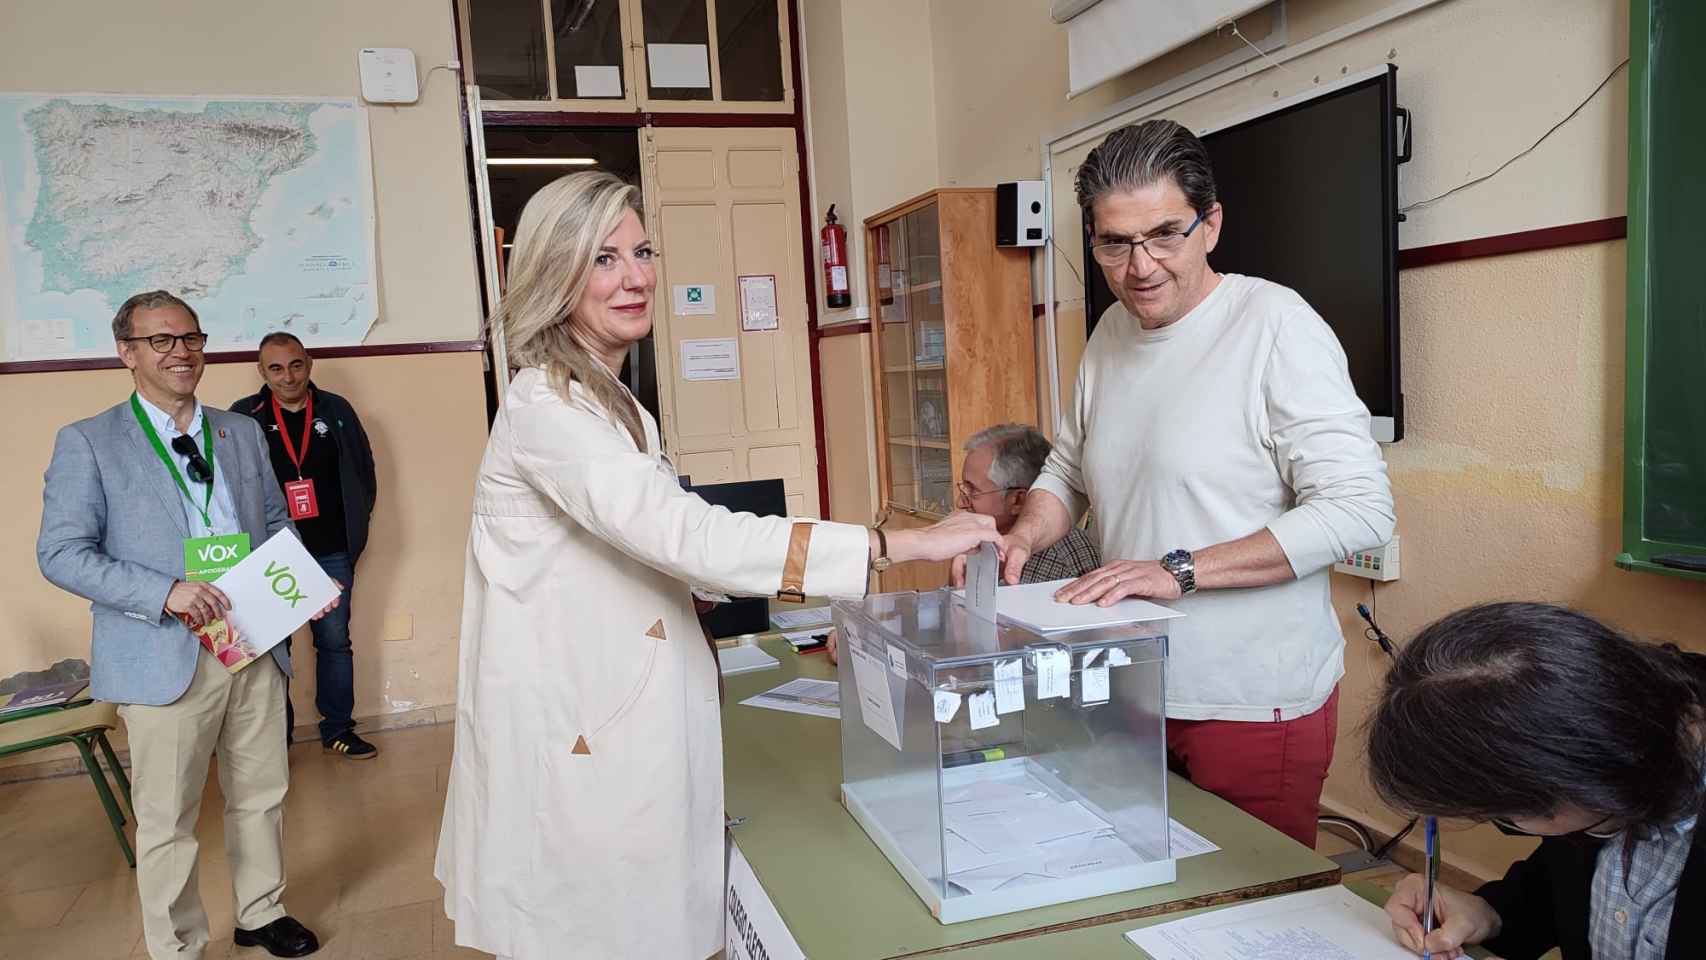 La candidata de Vox a la Alcaldía de Valladolid, Irene Carvajal, ejerciendo su derecho a voto, con Mariano Veganzones al fondo